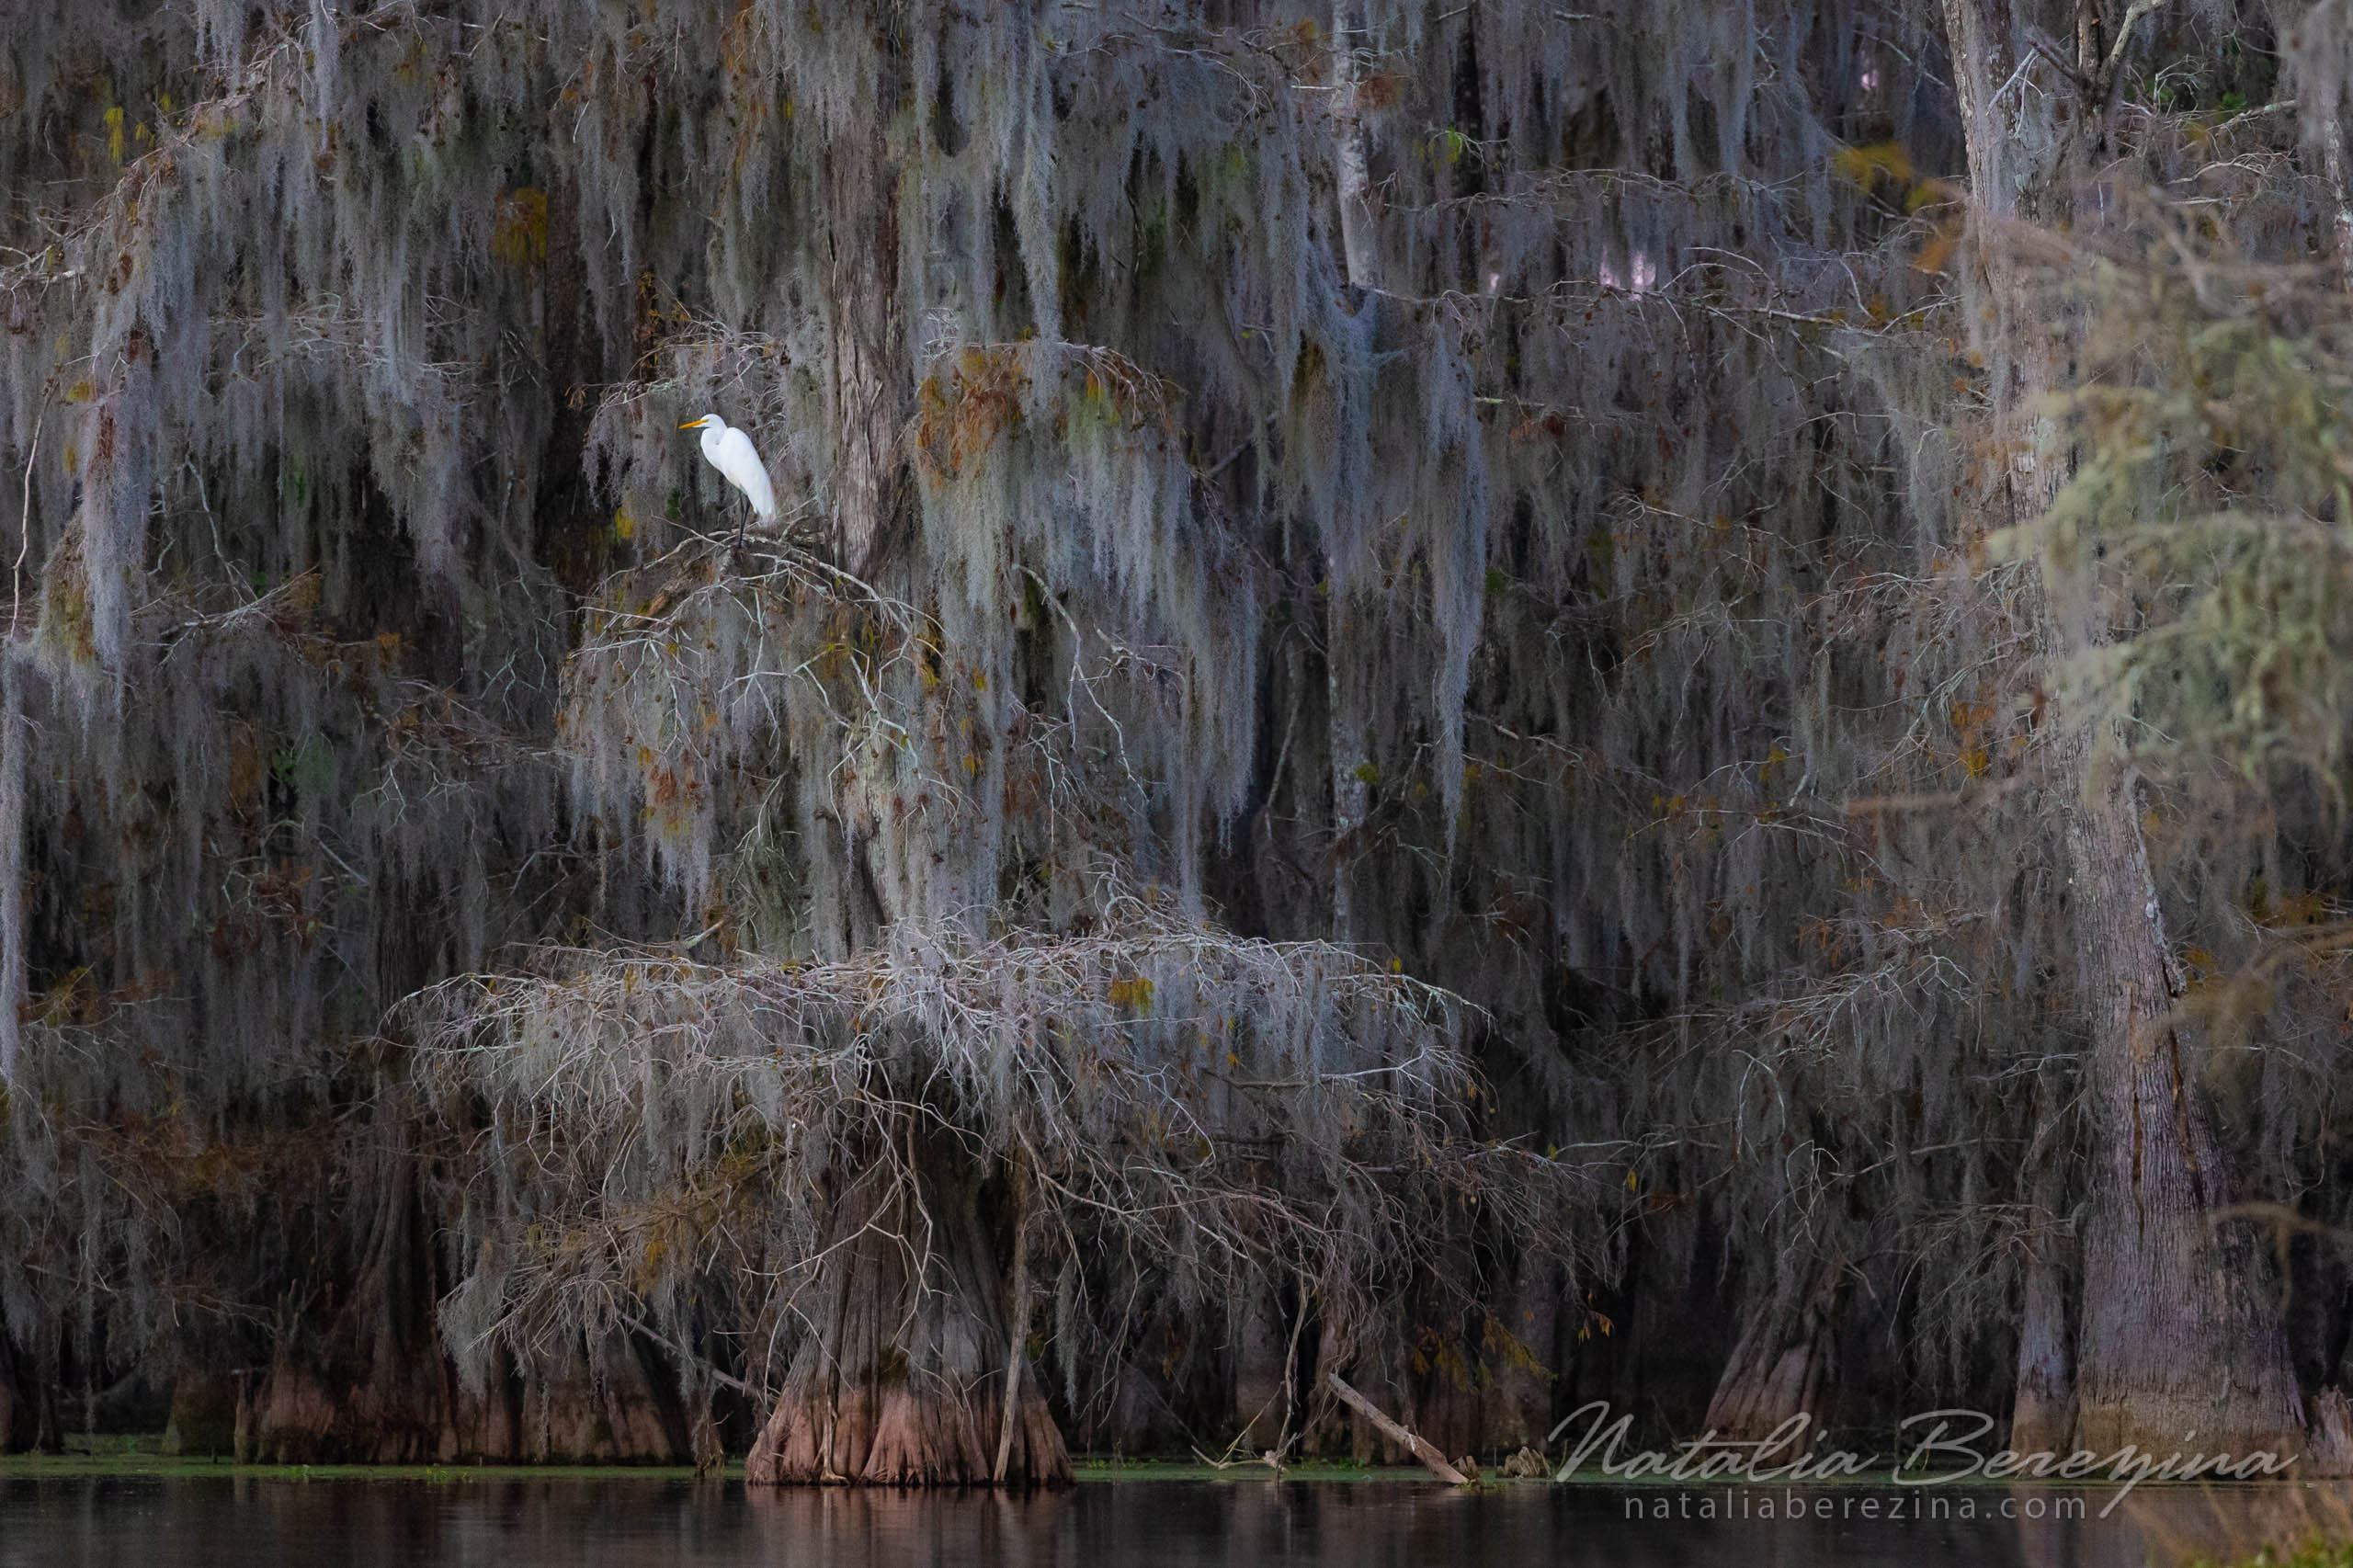 Louisiana, swaps, bird, wildlife LO1-NBDK1U8584 - Cypress Swamps Wild Life, Louisiana, Texas, USA - Natalia Berezina Photography